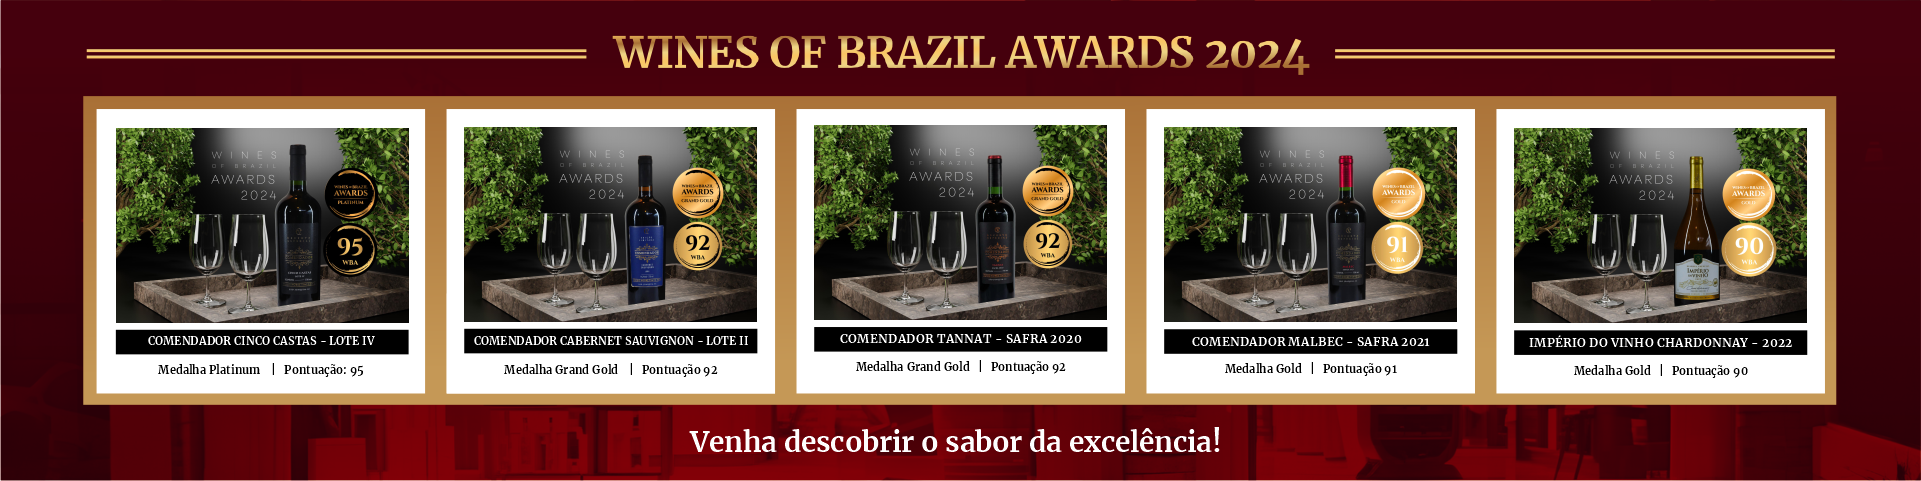 Banner vinhos premiados Wines of Brazil Awards